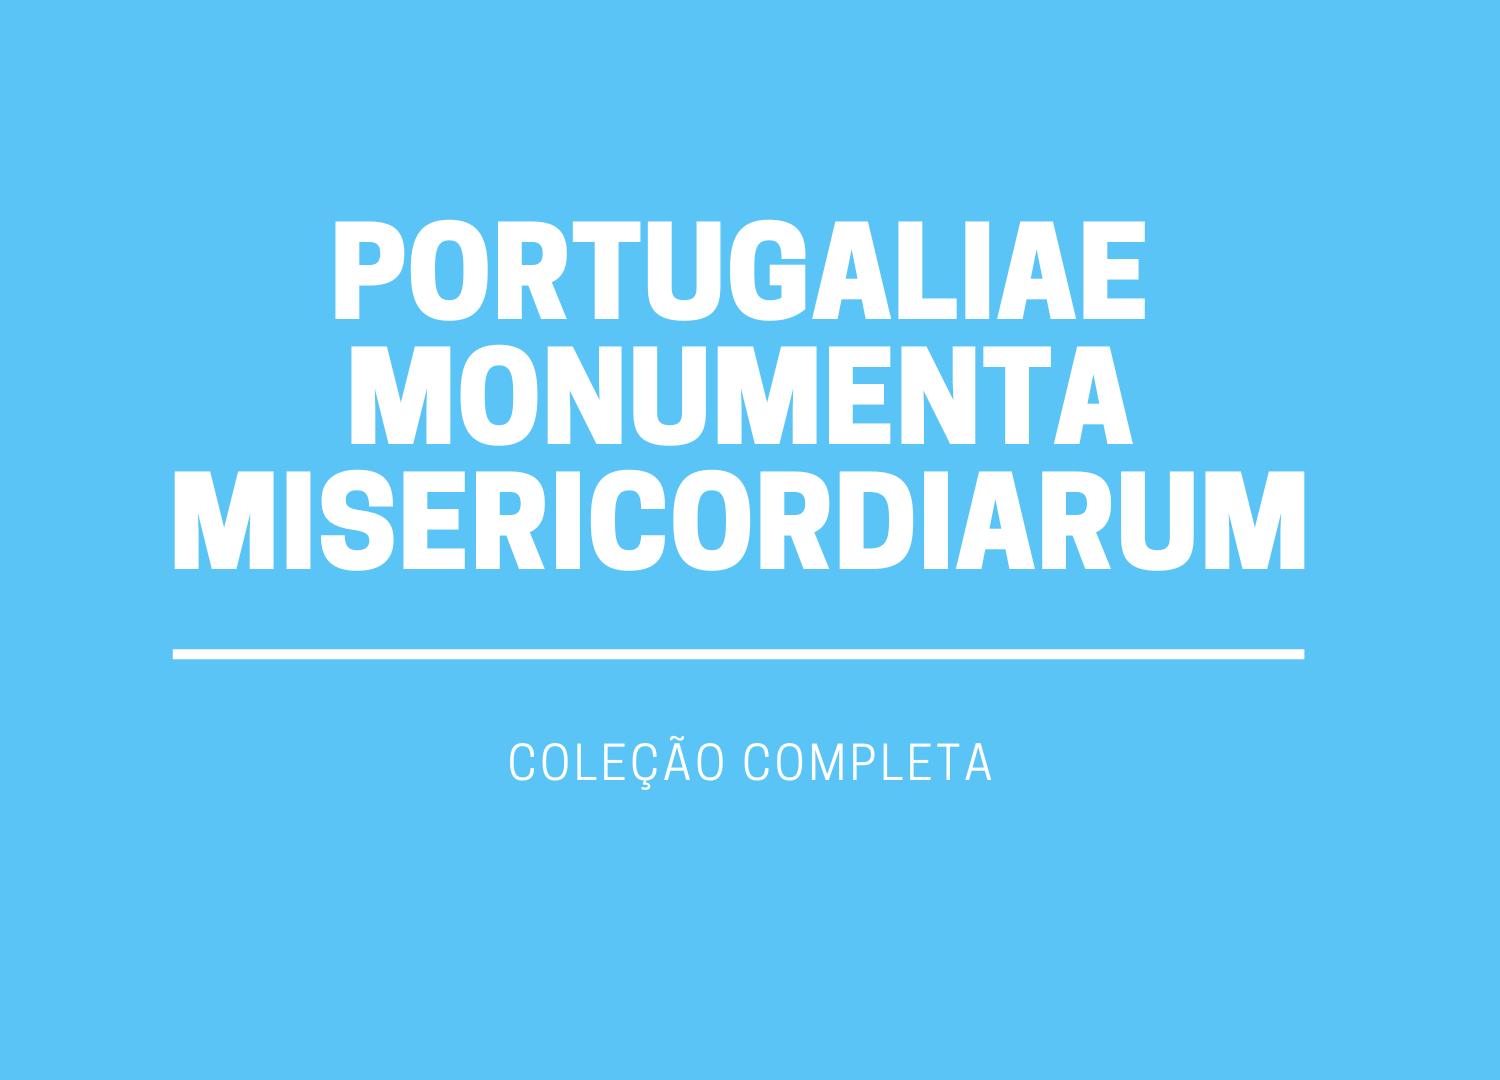 Portugaliae Monumenta Misericordiarum